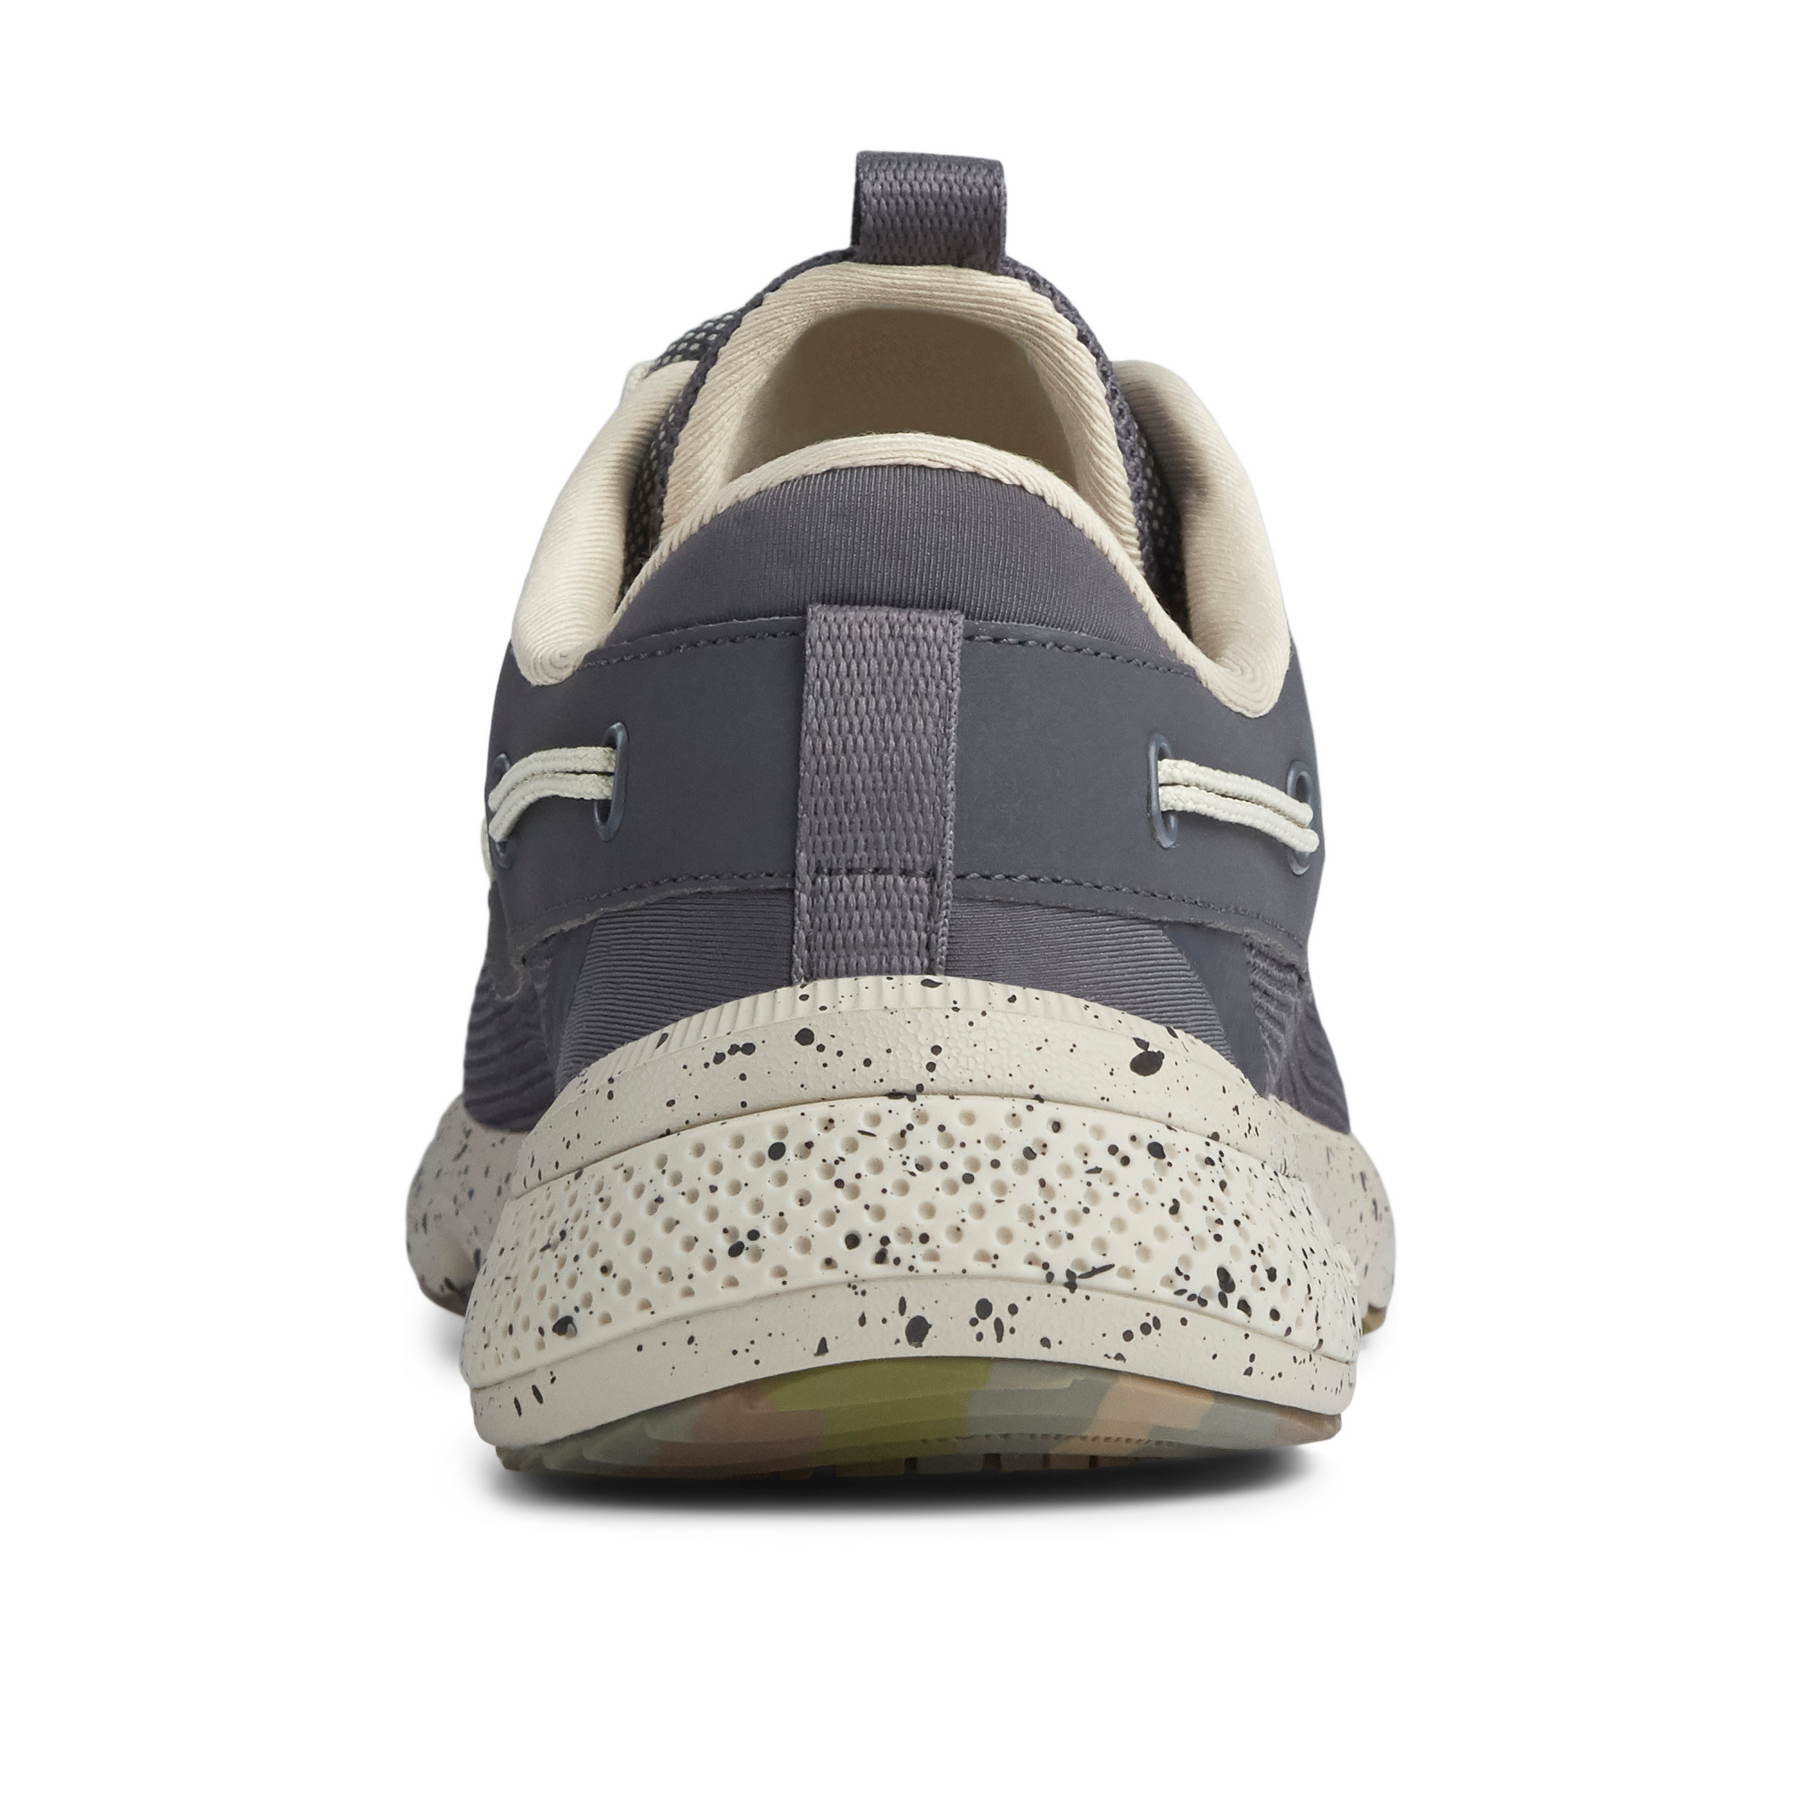 Men's 7 Seas 3-Eye Sport Sneaker - Dark Grey (STS19497)